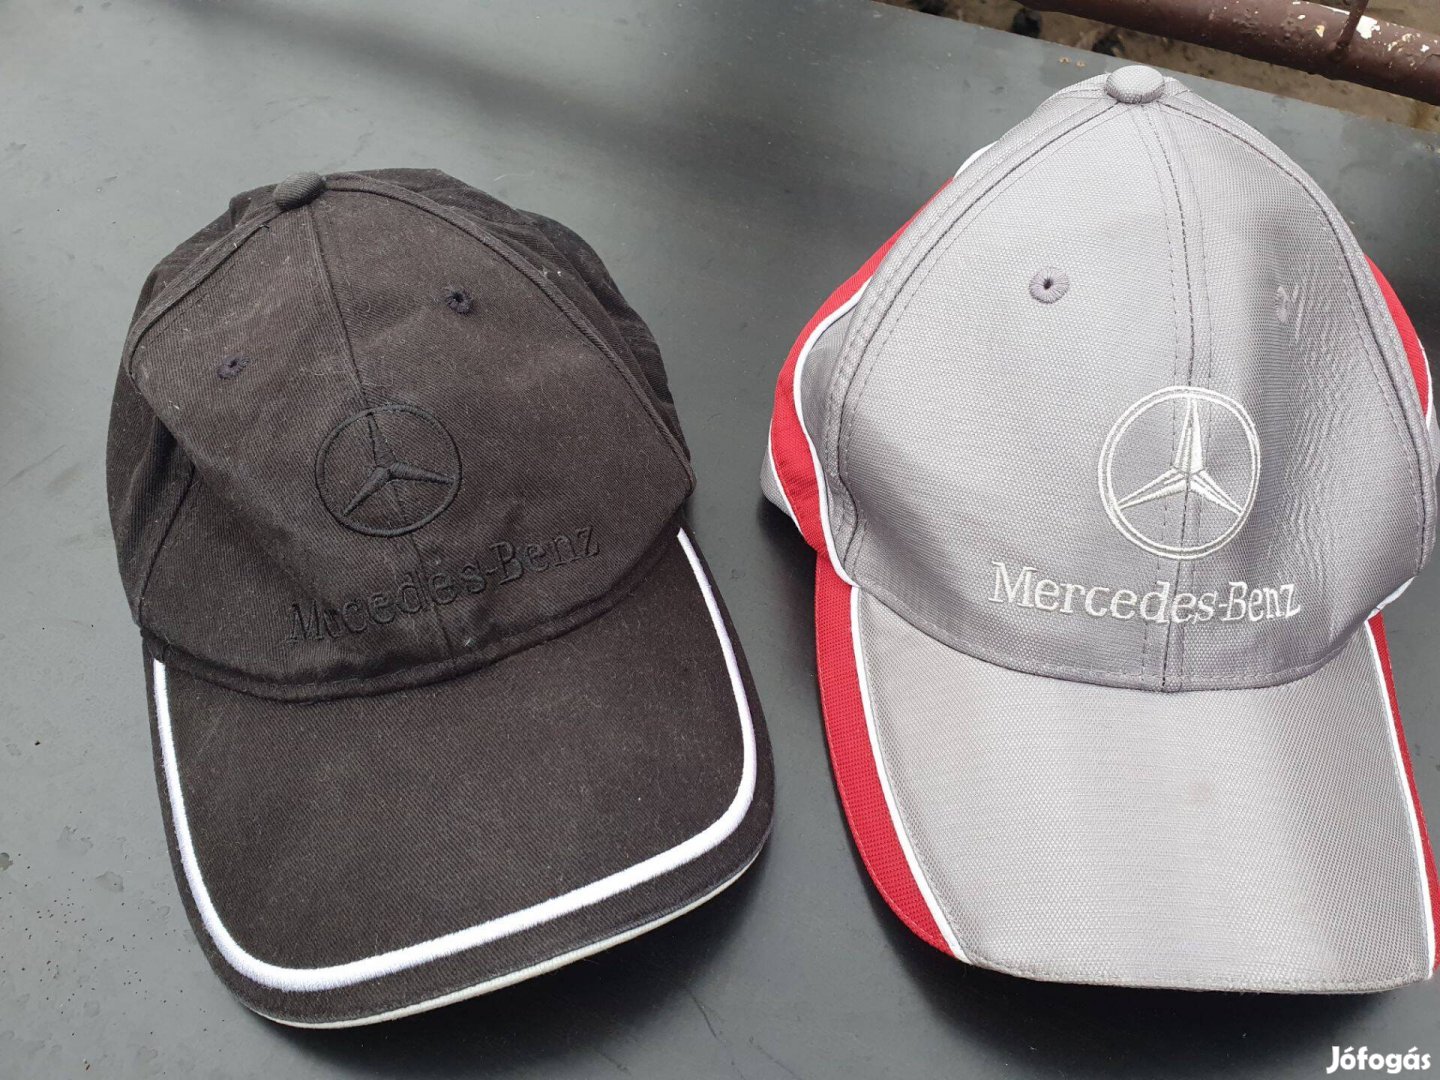 Mercedes-Benz sapkák -fekete, ezüst, uniszex